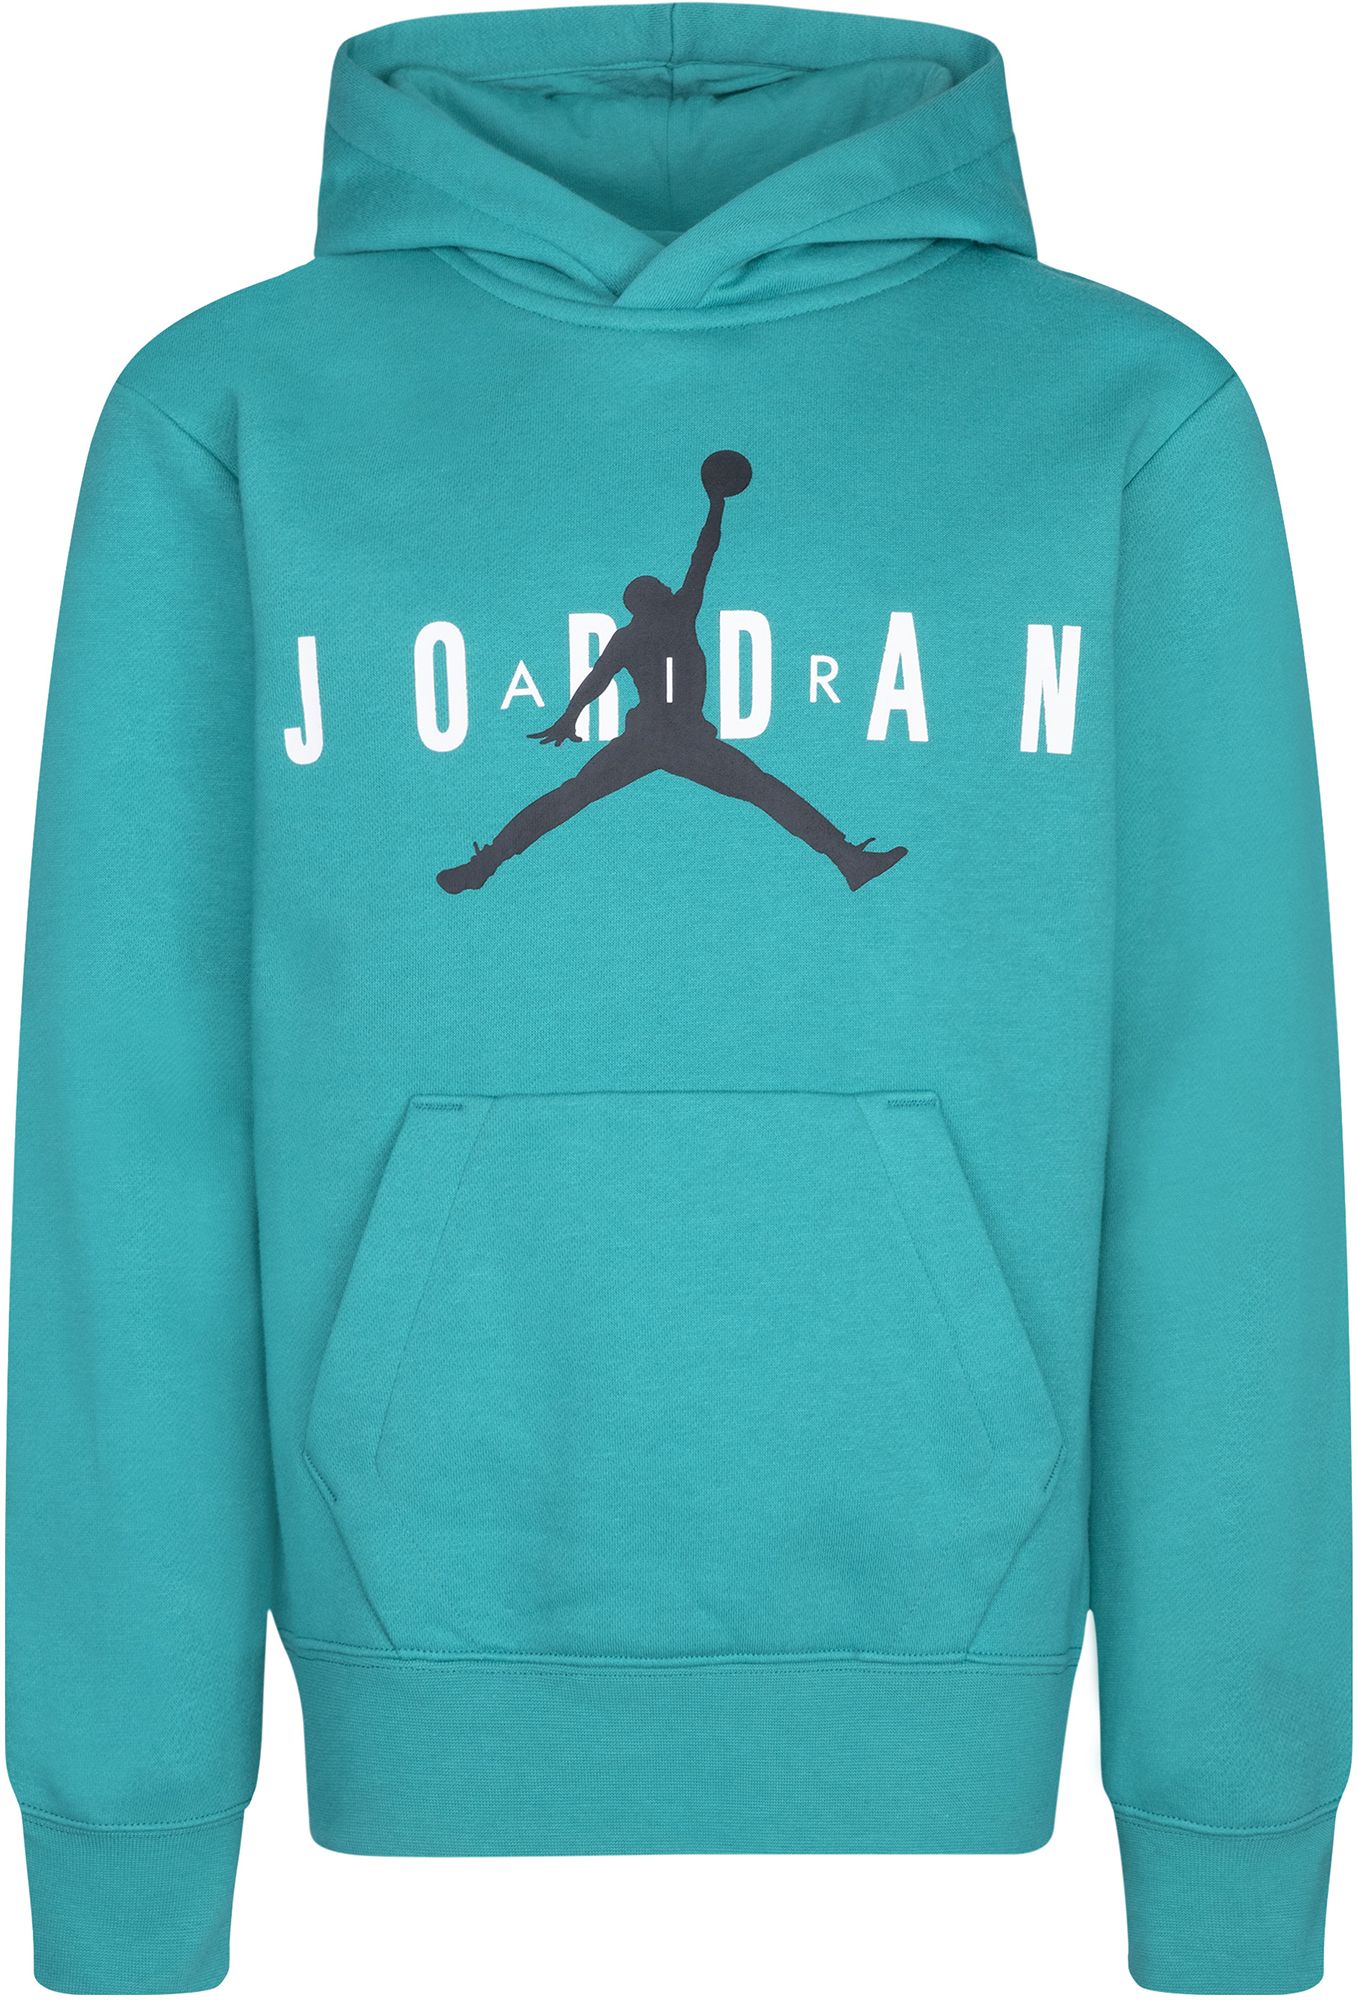 buy jordan clothes